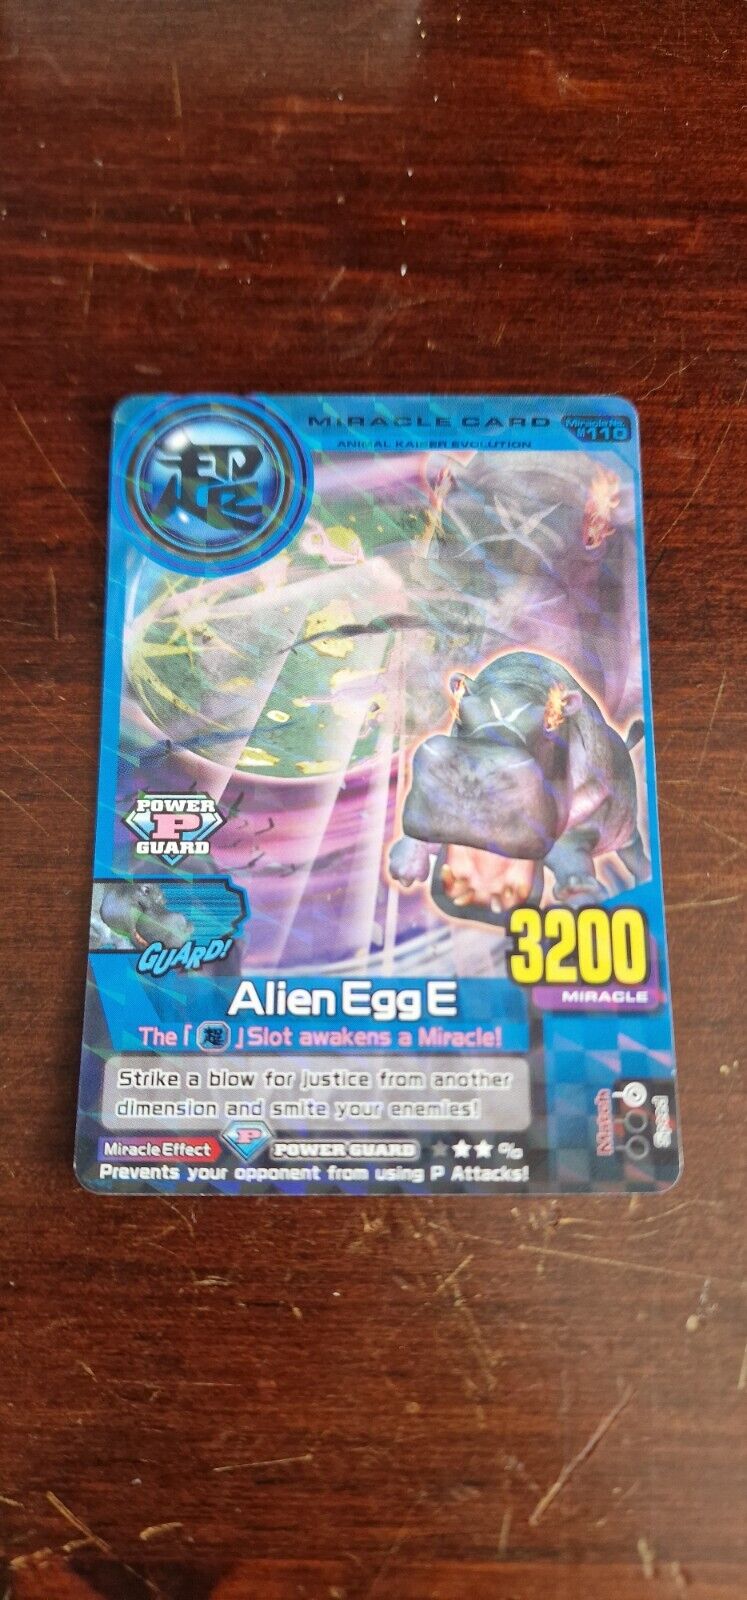 Alien Egg E - Animal Kaiser Evo 2